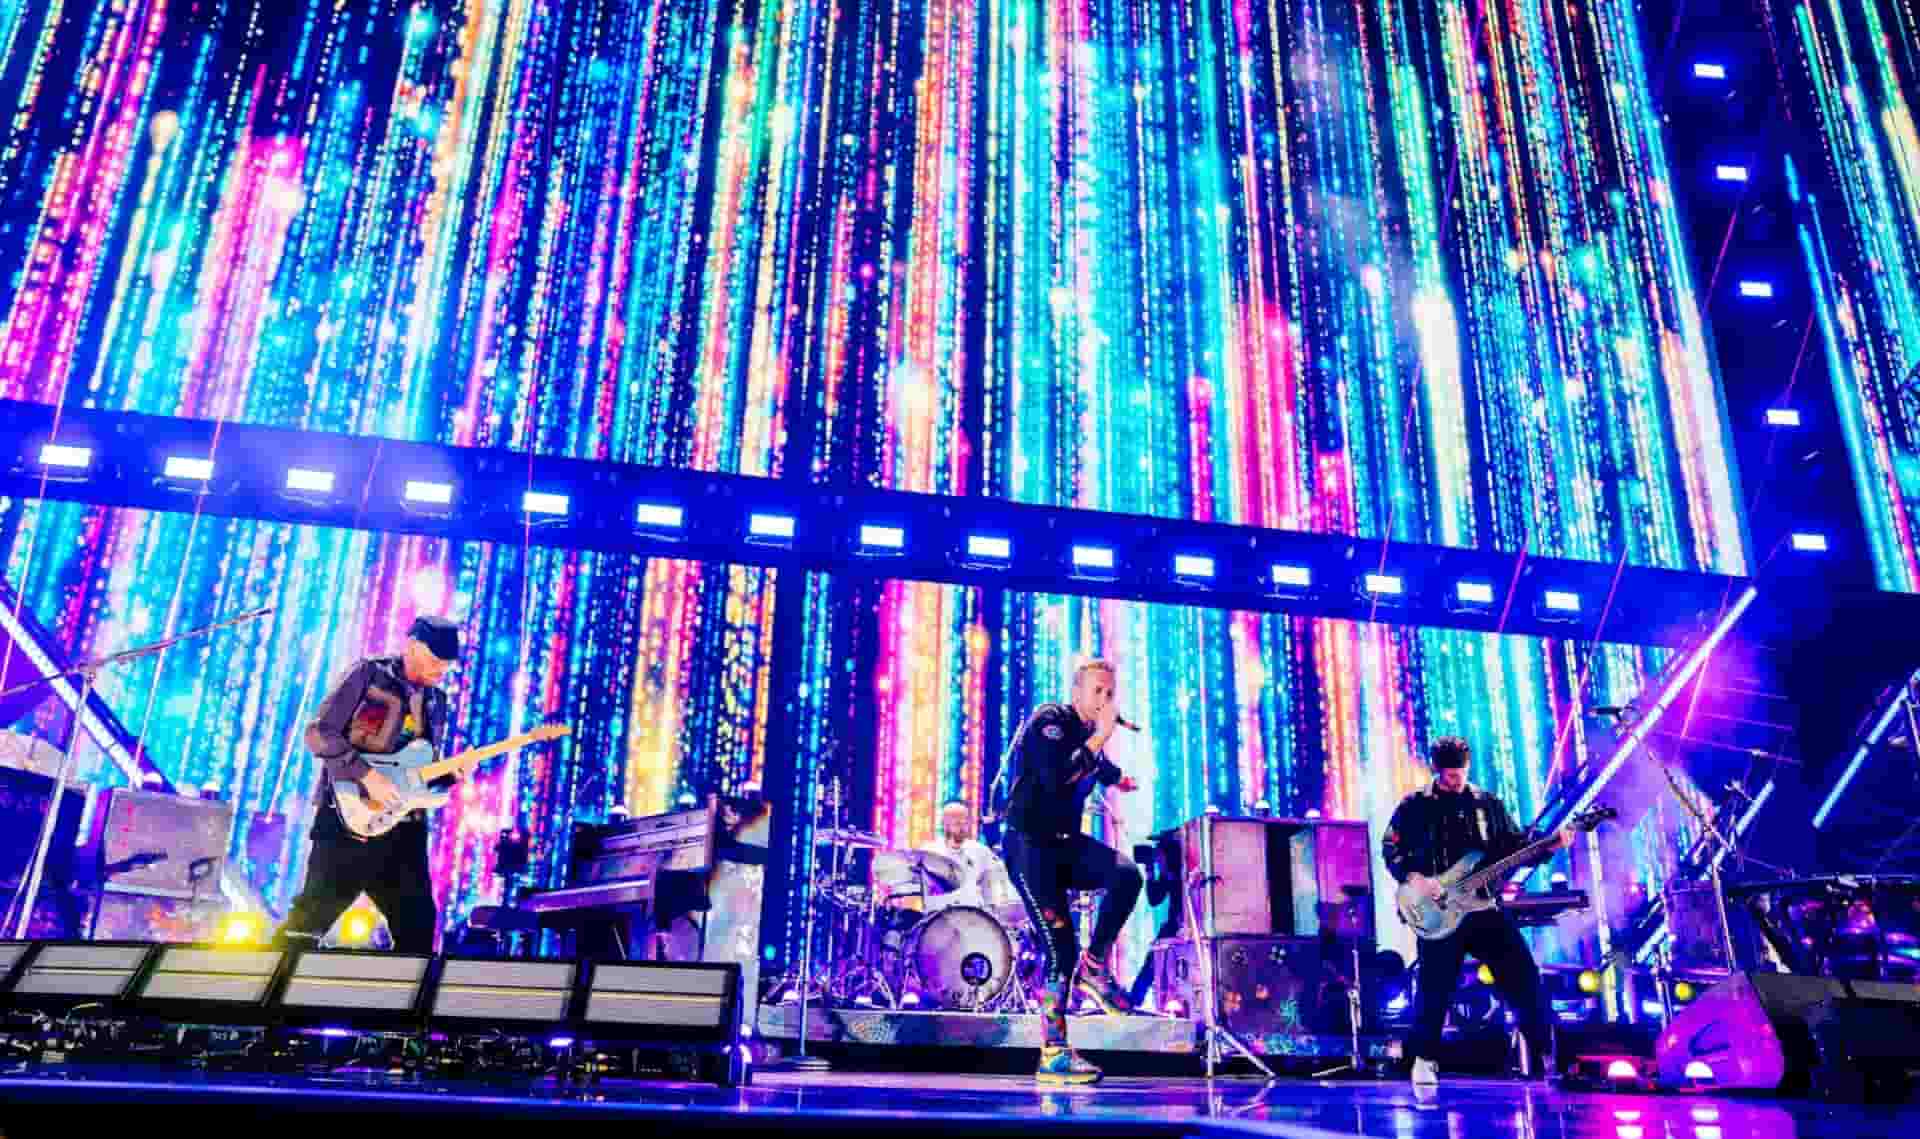 ¿Cómo serán los conciertos sustentables de Coldplay en Latinoamérica?